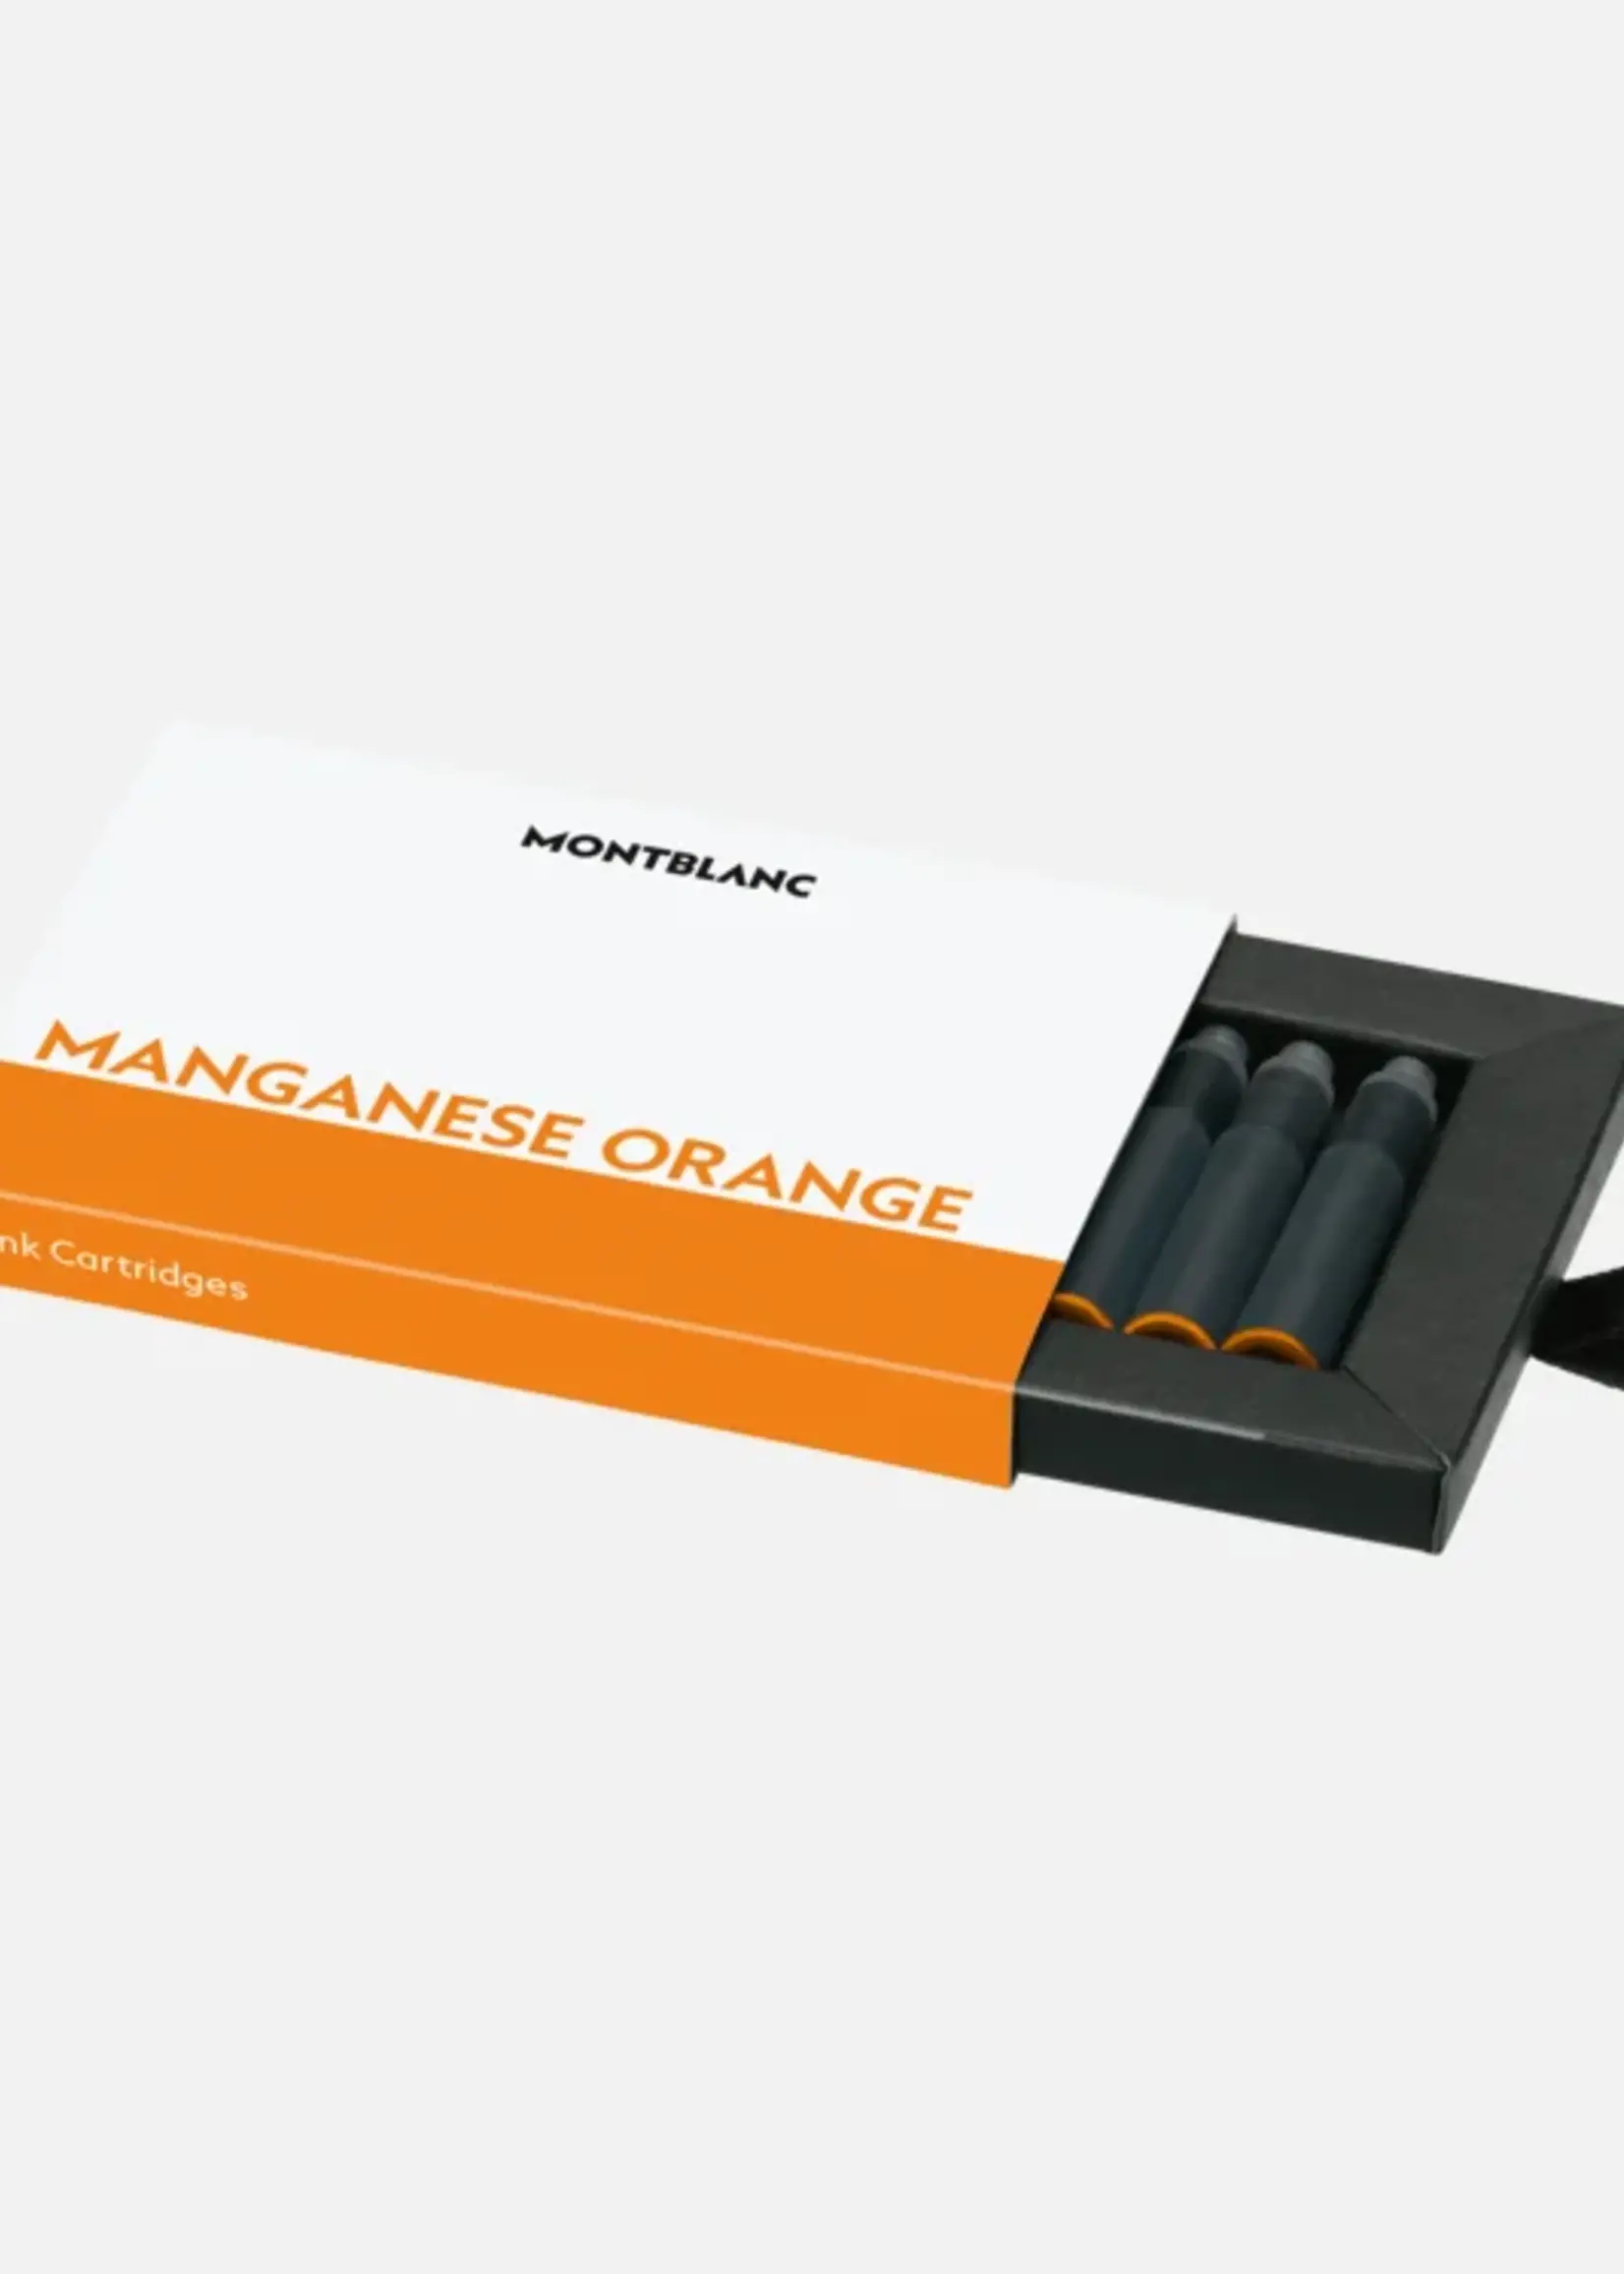 Montblanc TINTENPATRONEN, MANGANESE ORANGE